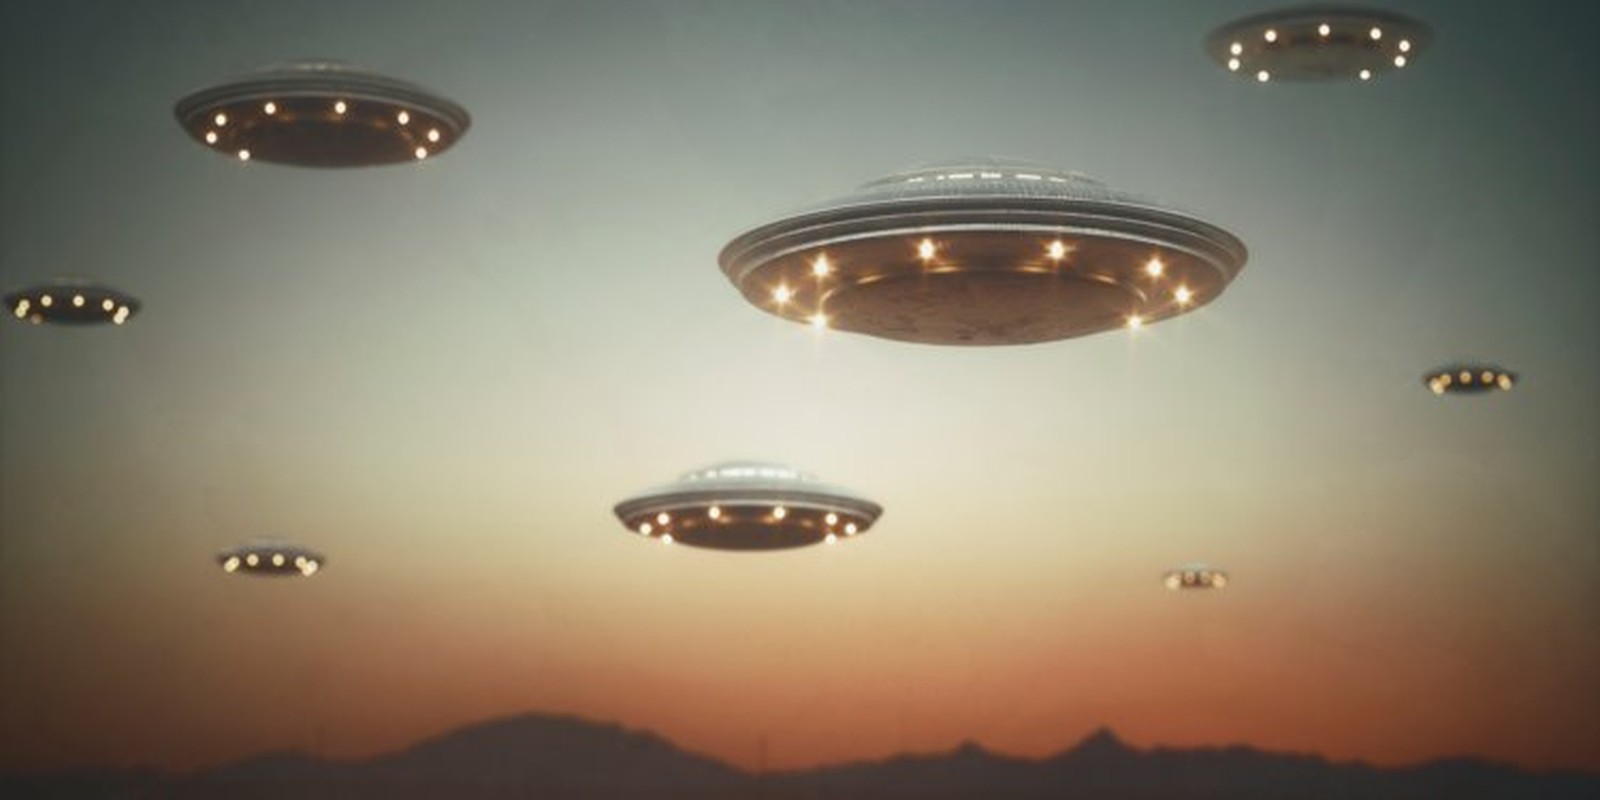 UFO cua nguoi ngoai hanh tinh co kha nang tang hinh?